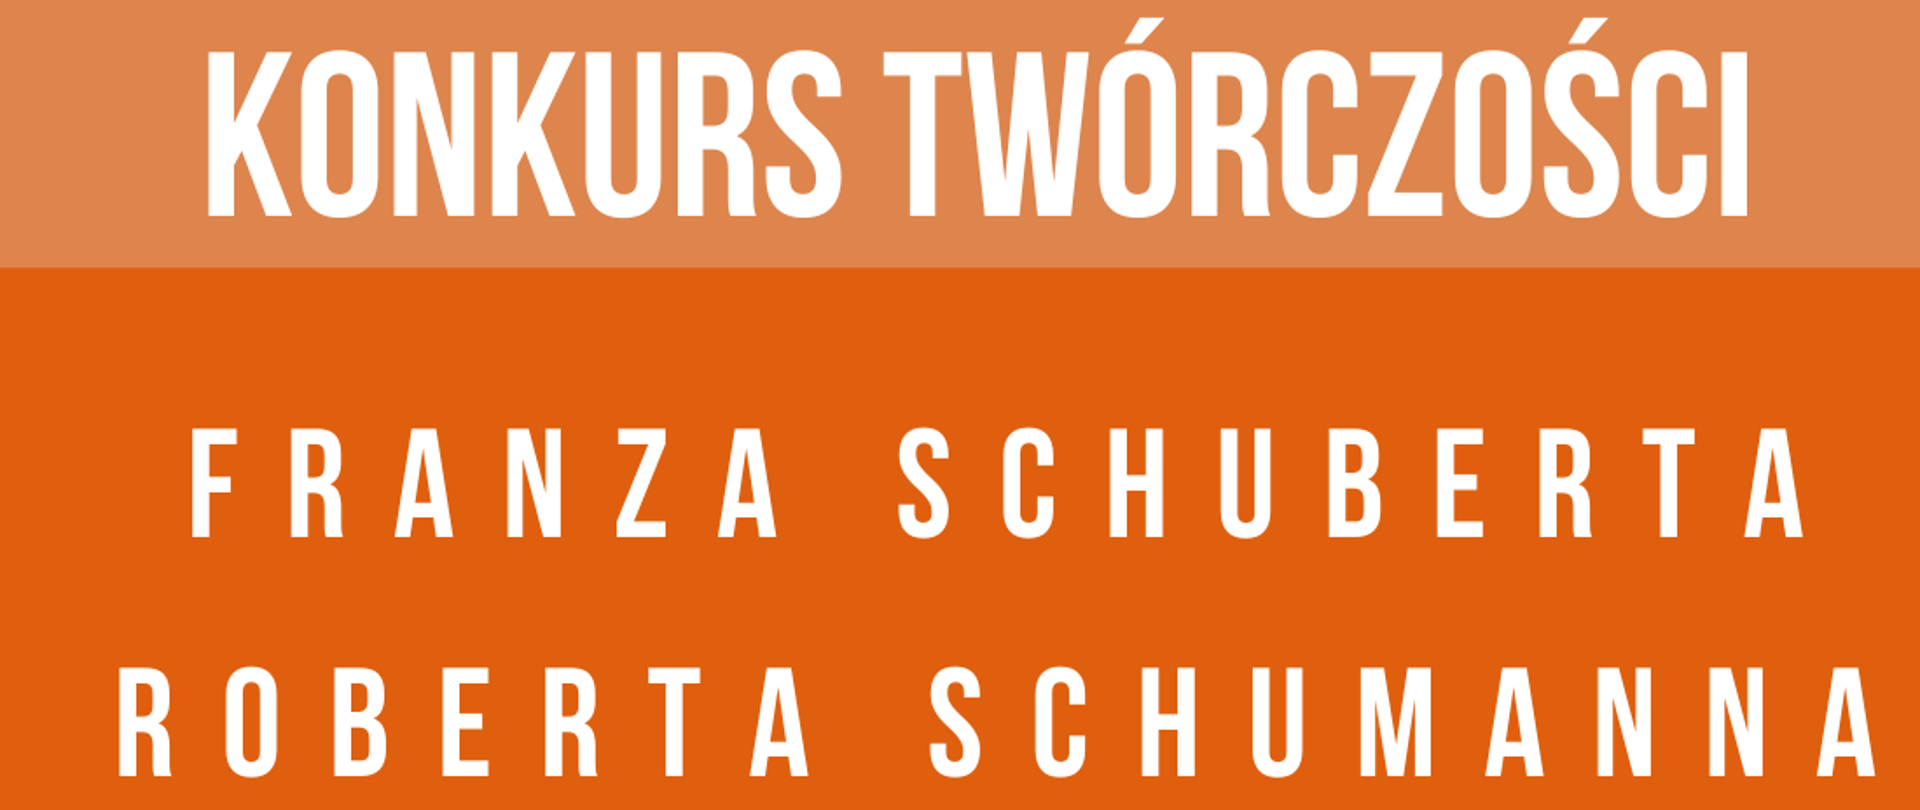 w centralnej części znajdują się fotografie przedstawiające dwóch kompozytorów: Franza Schuberta i Roberta Schumanna, w prawym górnym rogu logo szkoły, w dolnej części informacja o terminie oraz miejscu wydarzenia, całość zachowana w niebieskiej tonacji